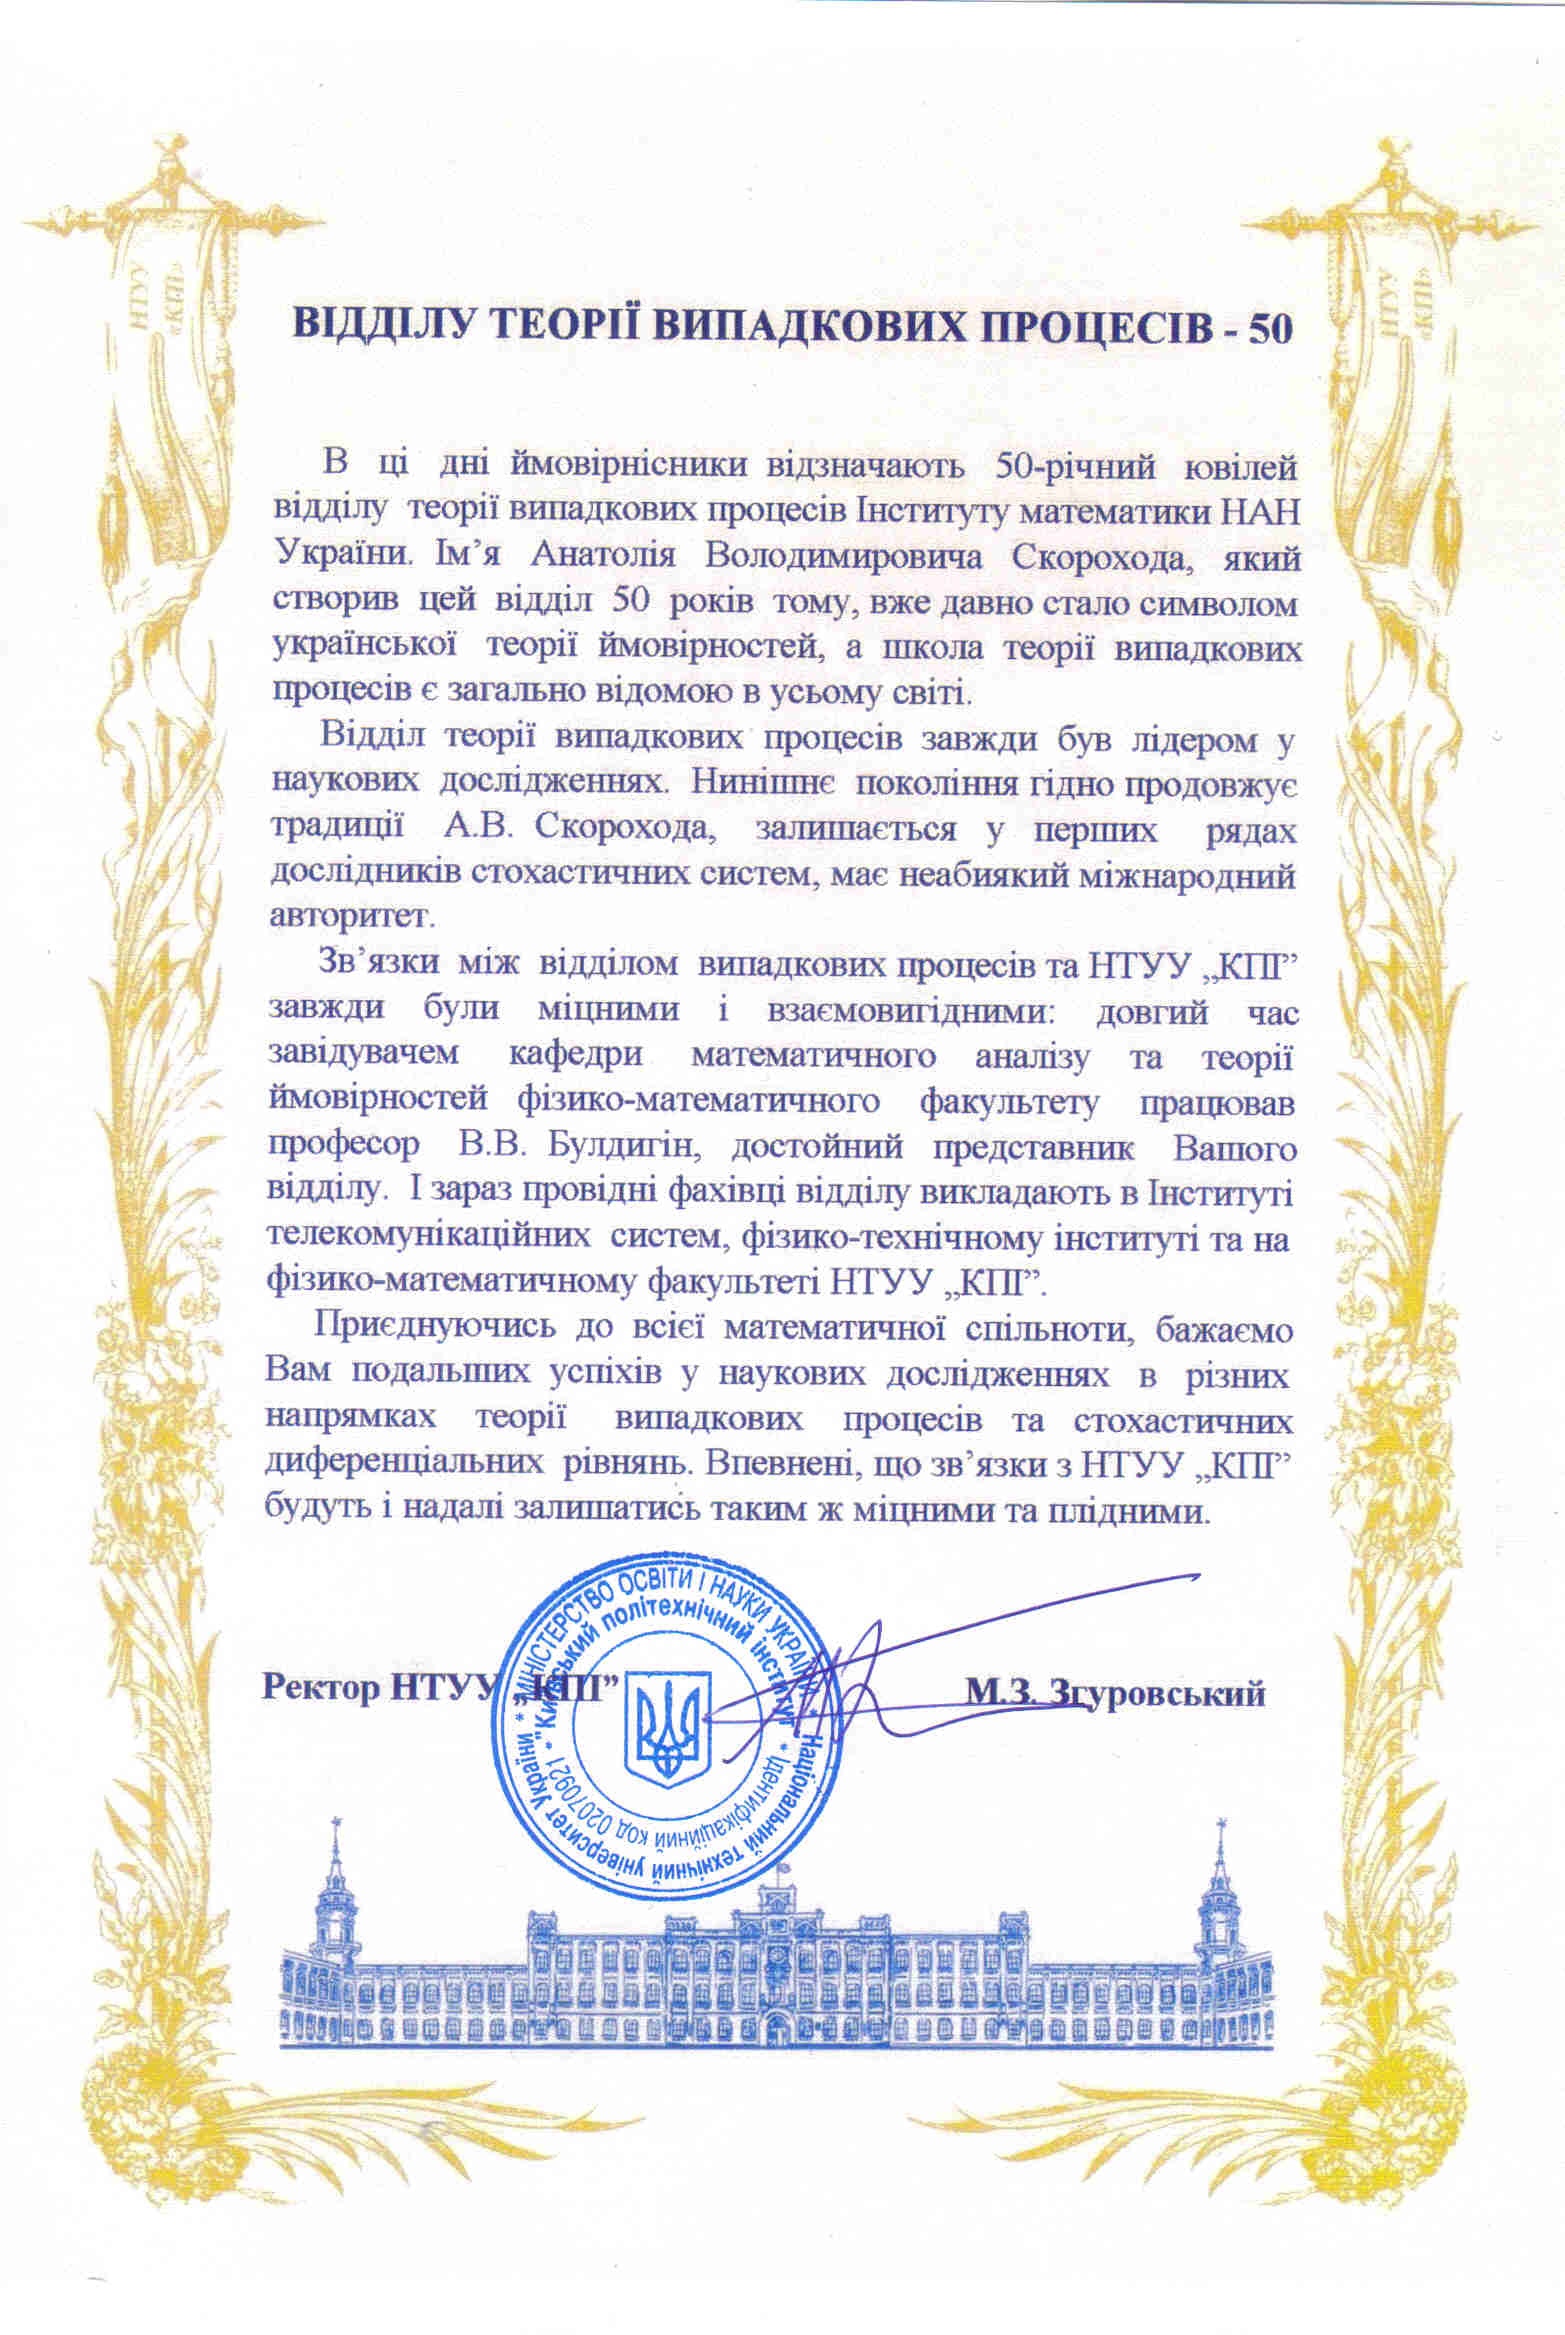 Привітання М.З.Згуровського з нагоди 50-річчя відділу ТВП ІМ НАНУ